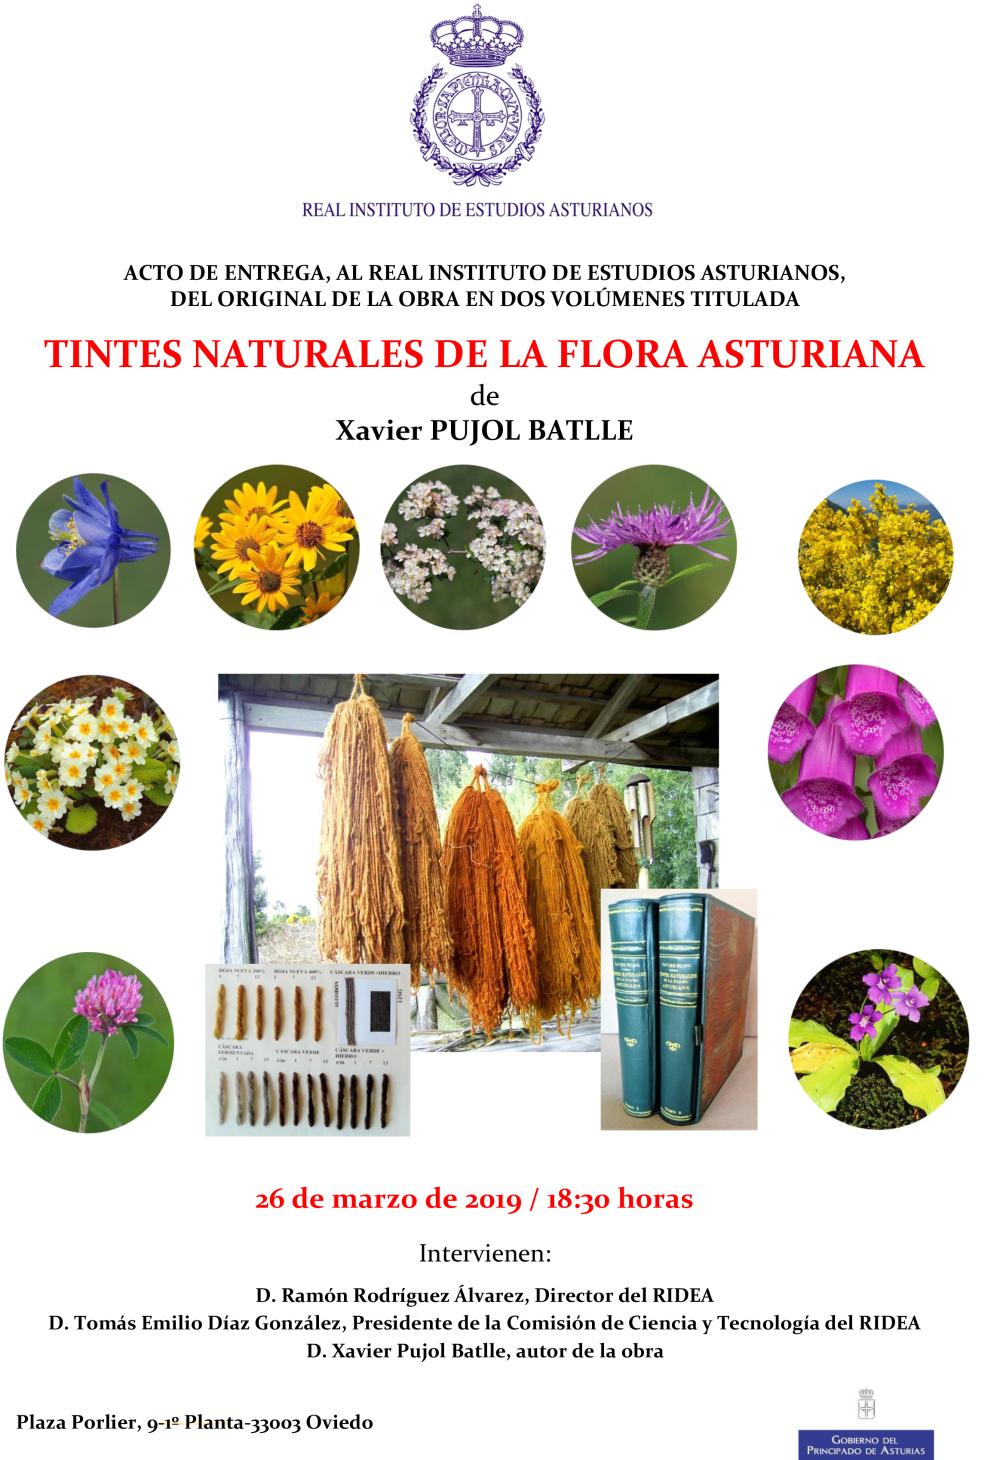 Imagen - Acto de entrega al RIDEA del original de la obra en dos volúmenes titulada “Tintes naturales de la flora asturiana” de Xavier Pujol Batlle.